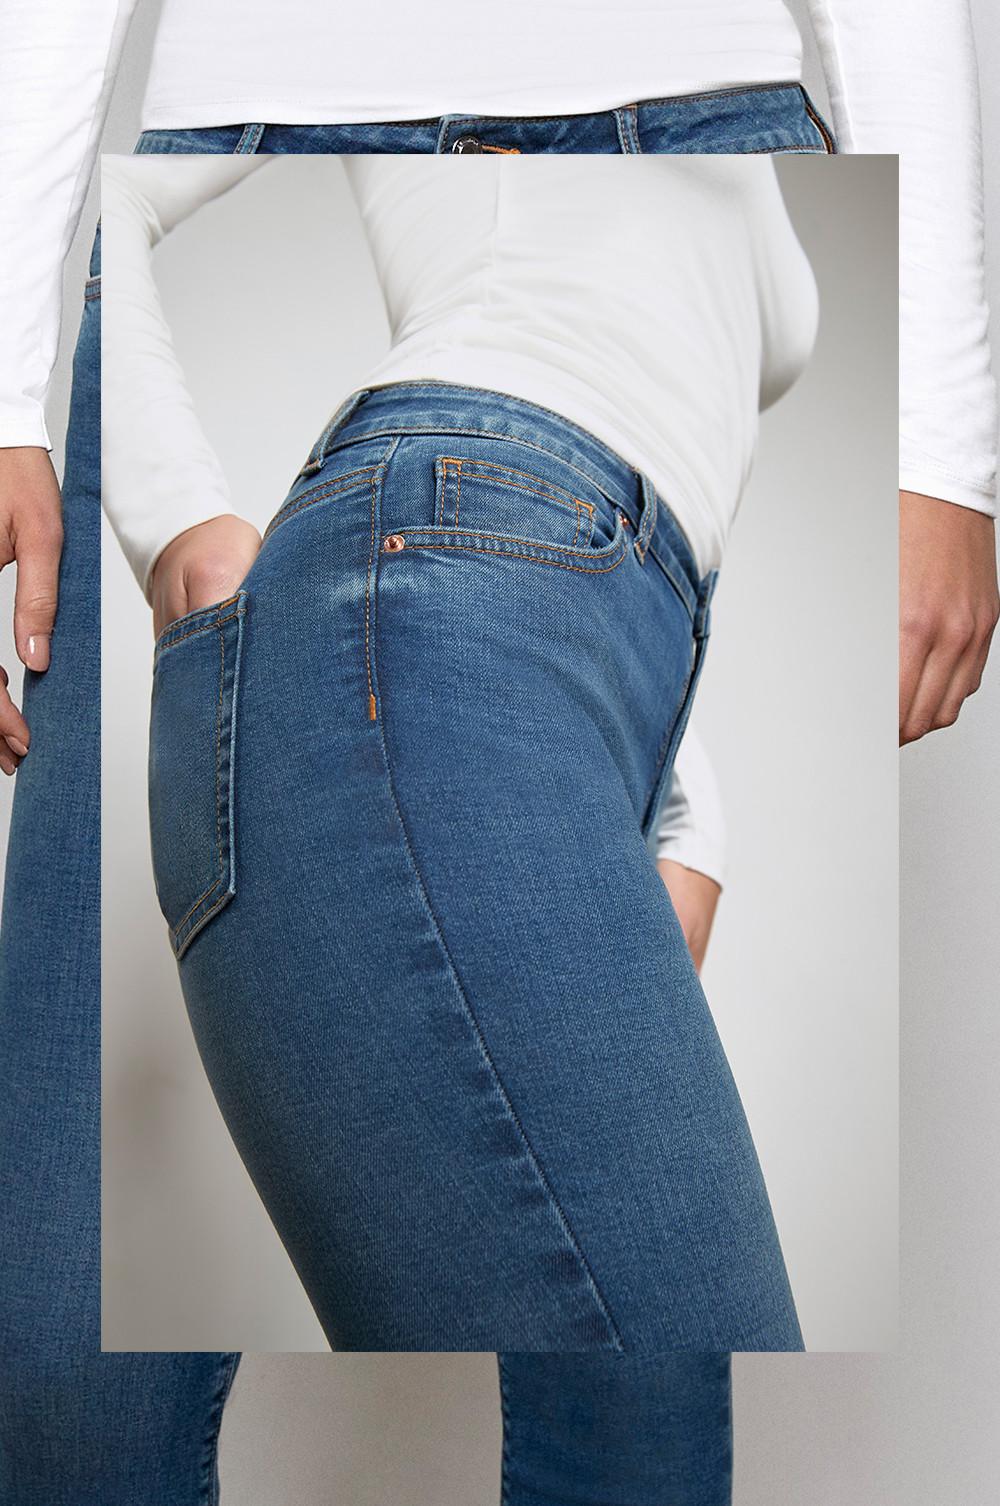 Die authentische High Waist Jeans